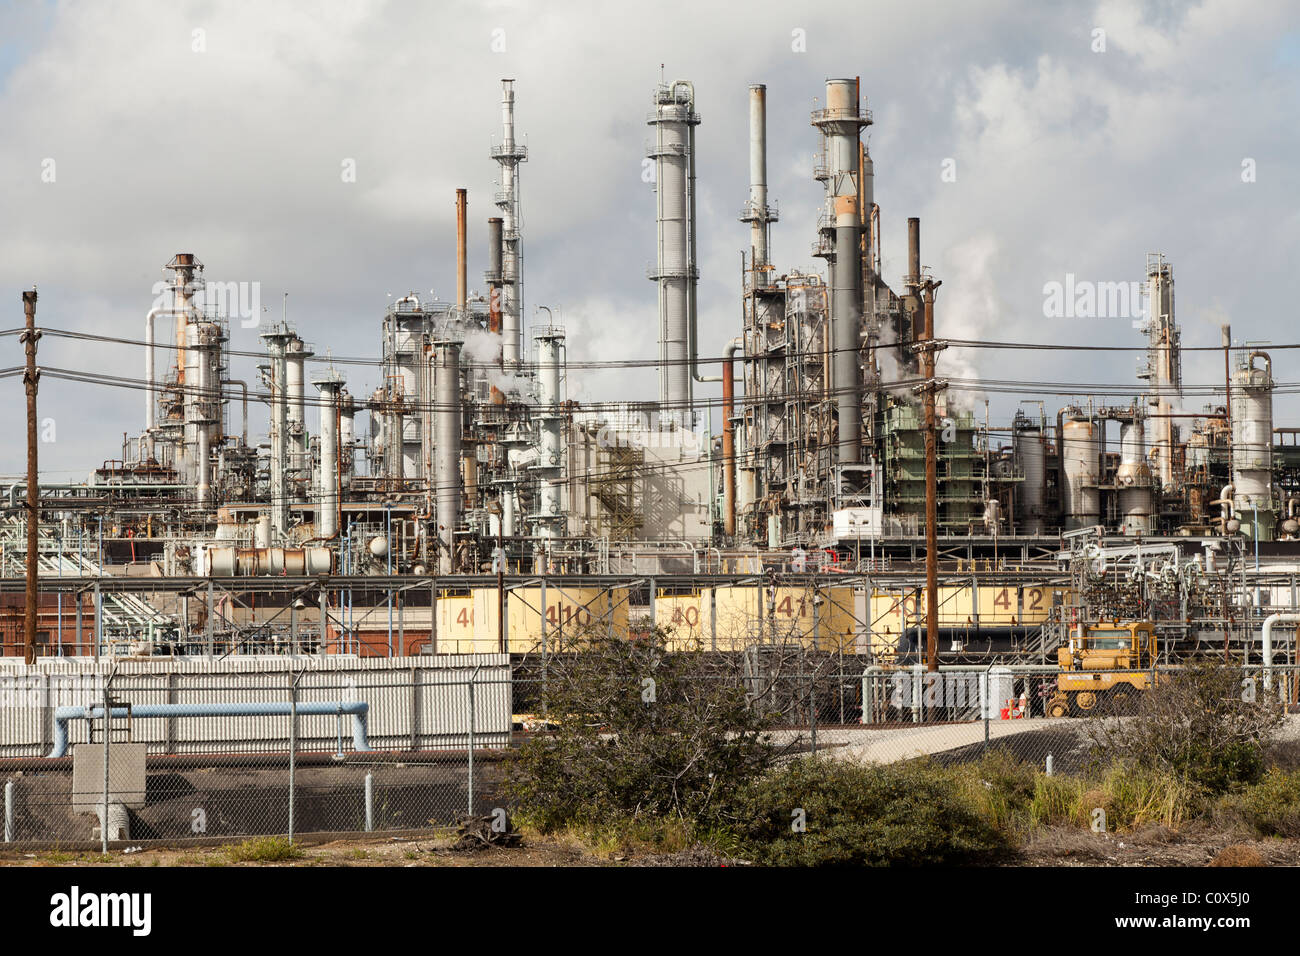 Conoco Phillips de refinería de petróleo en San Pedro, California Foto de stock